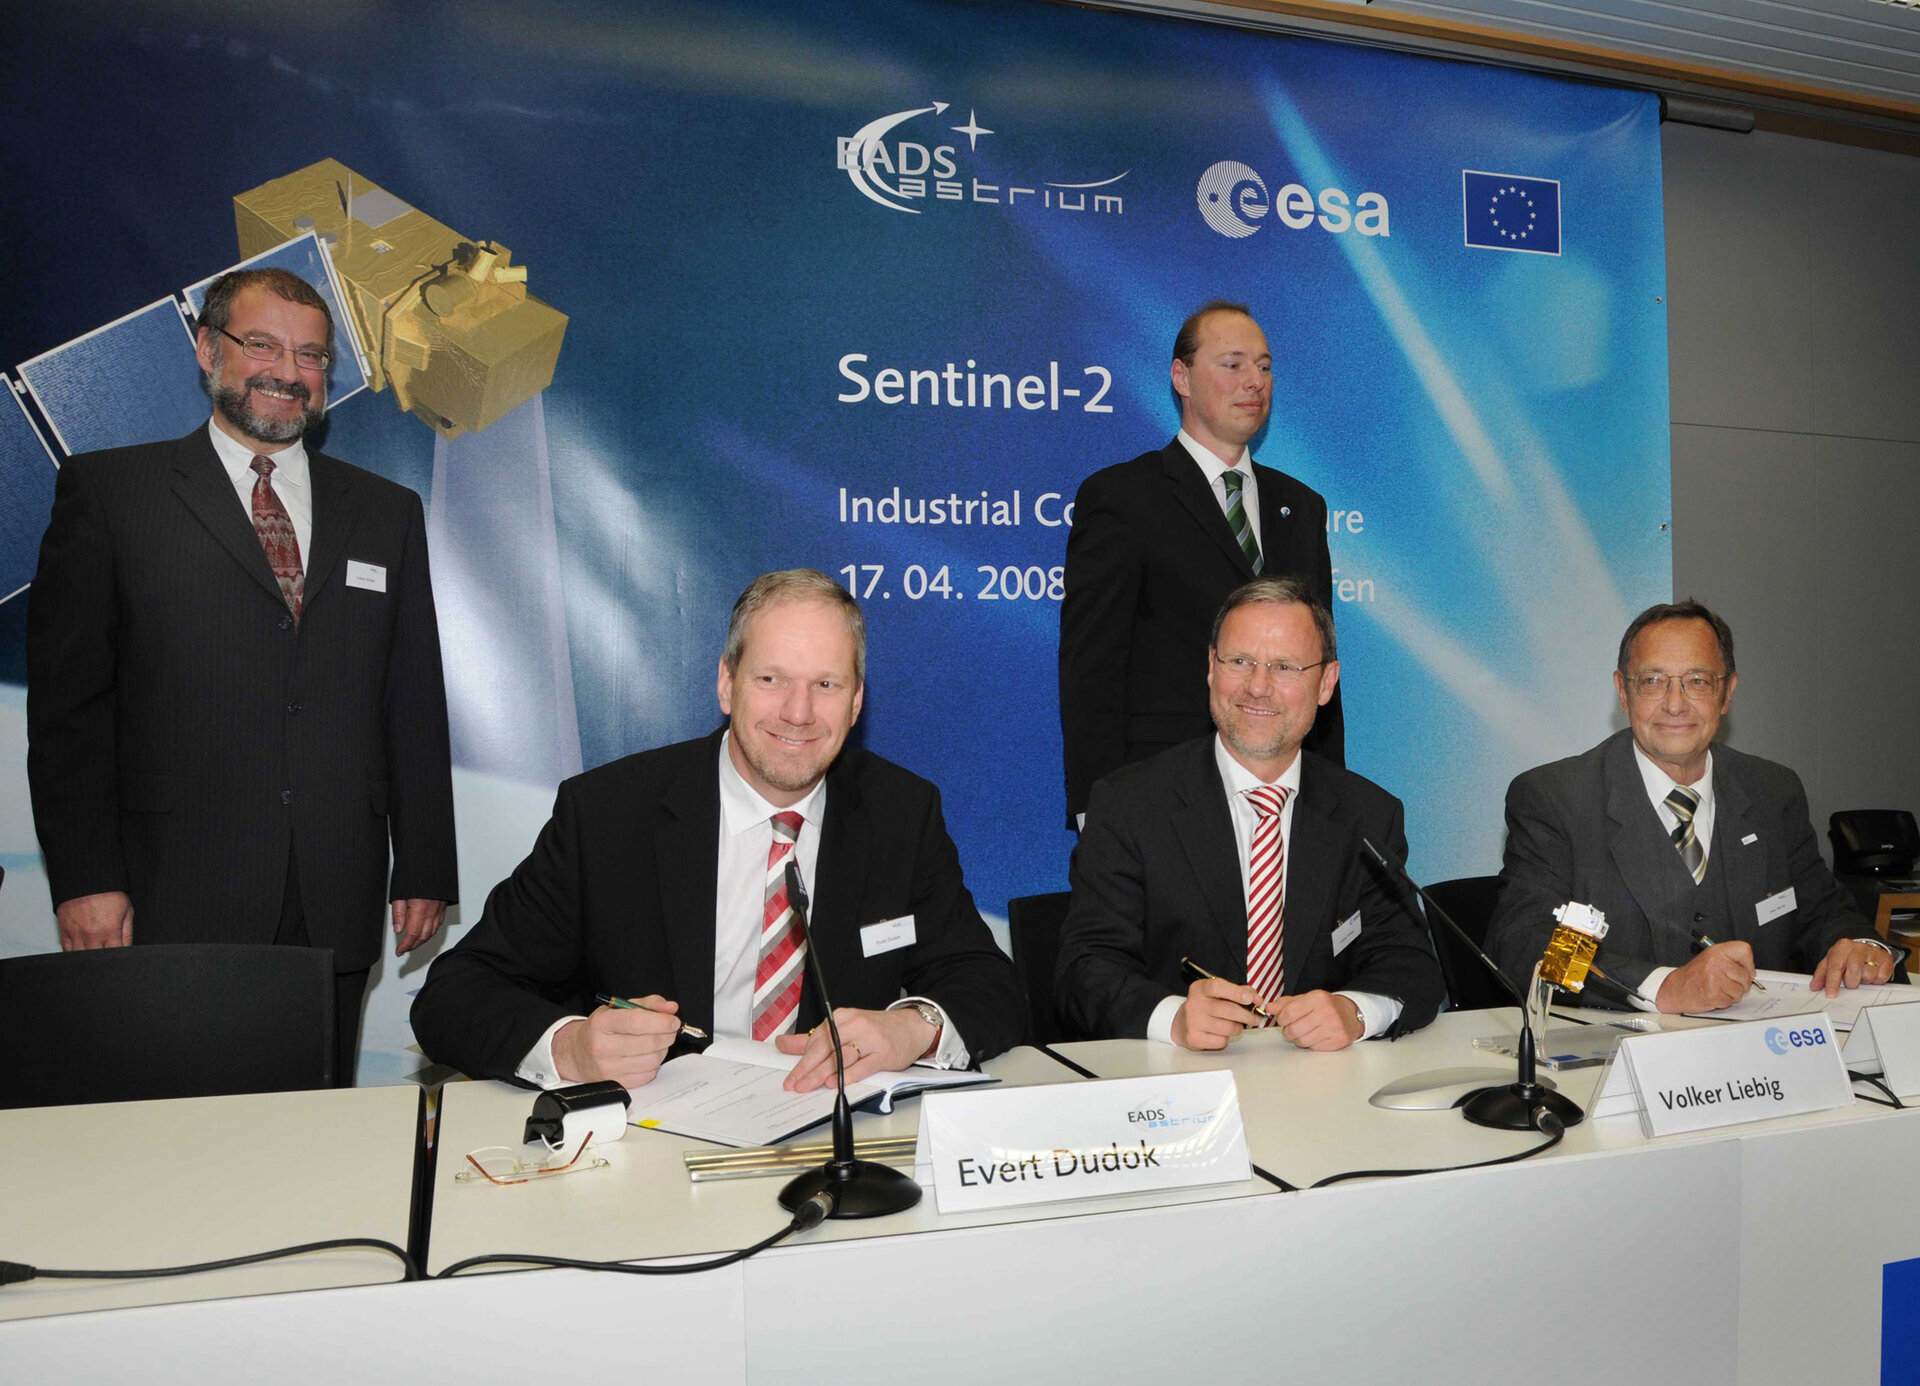 Unterzeichnung des Sentinel-2 Vertrages zwischen der ESA und Astrium